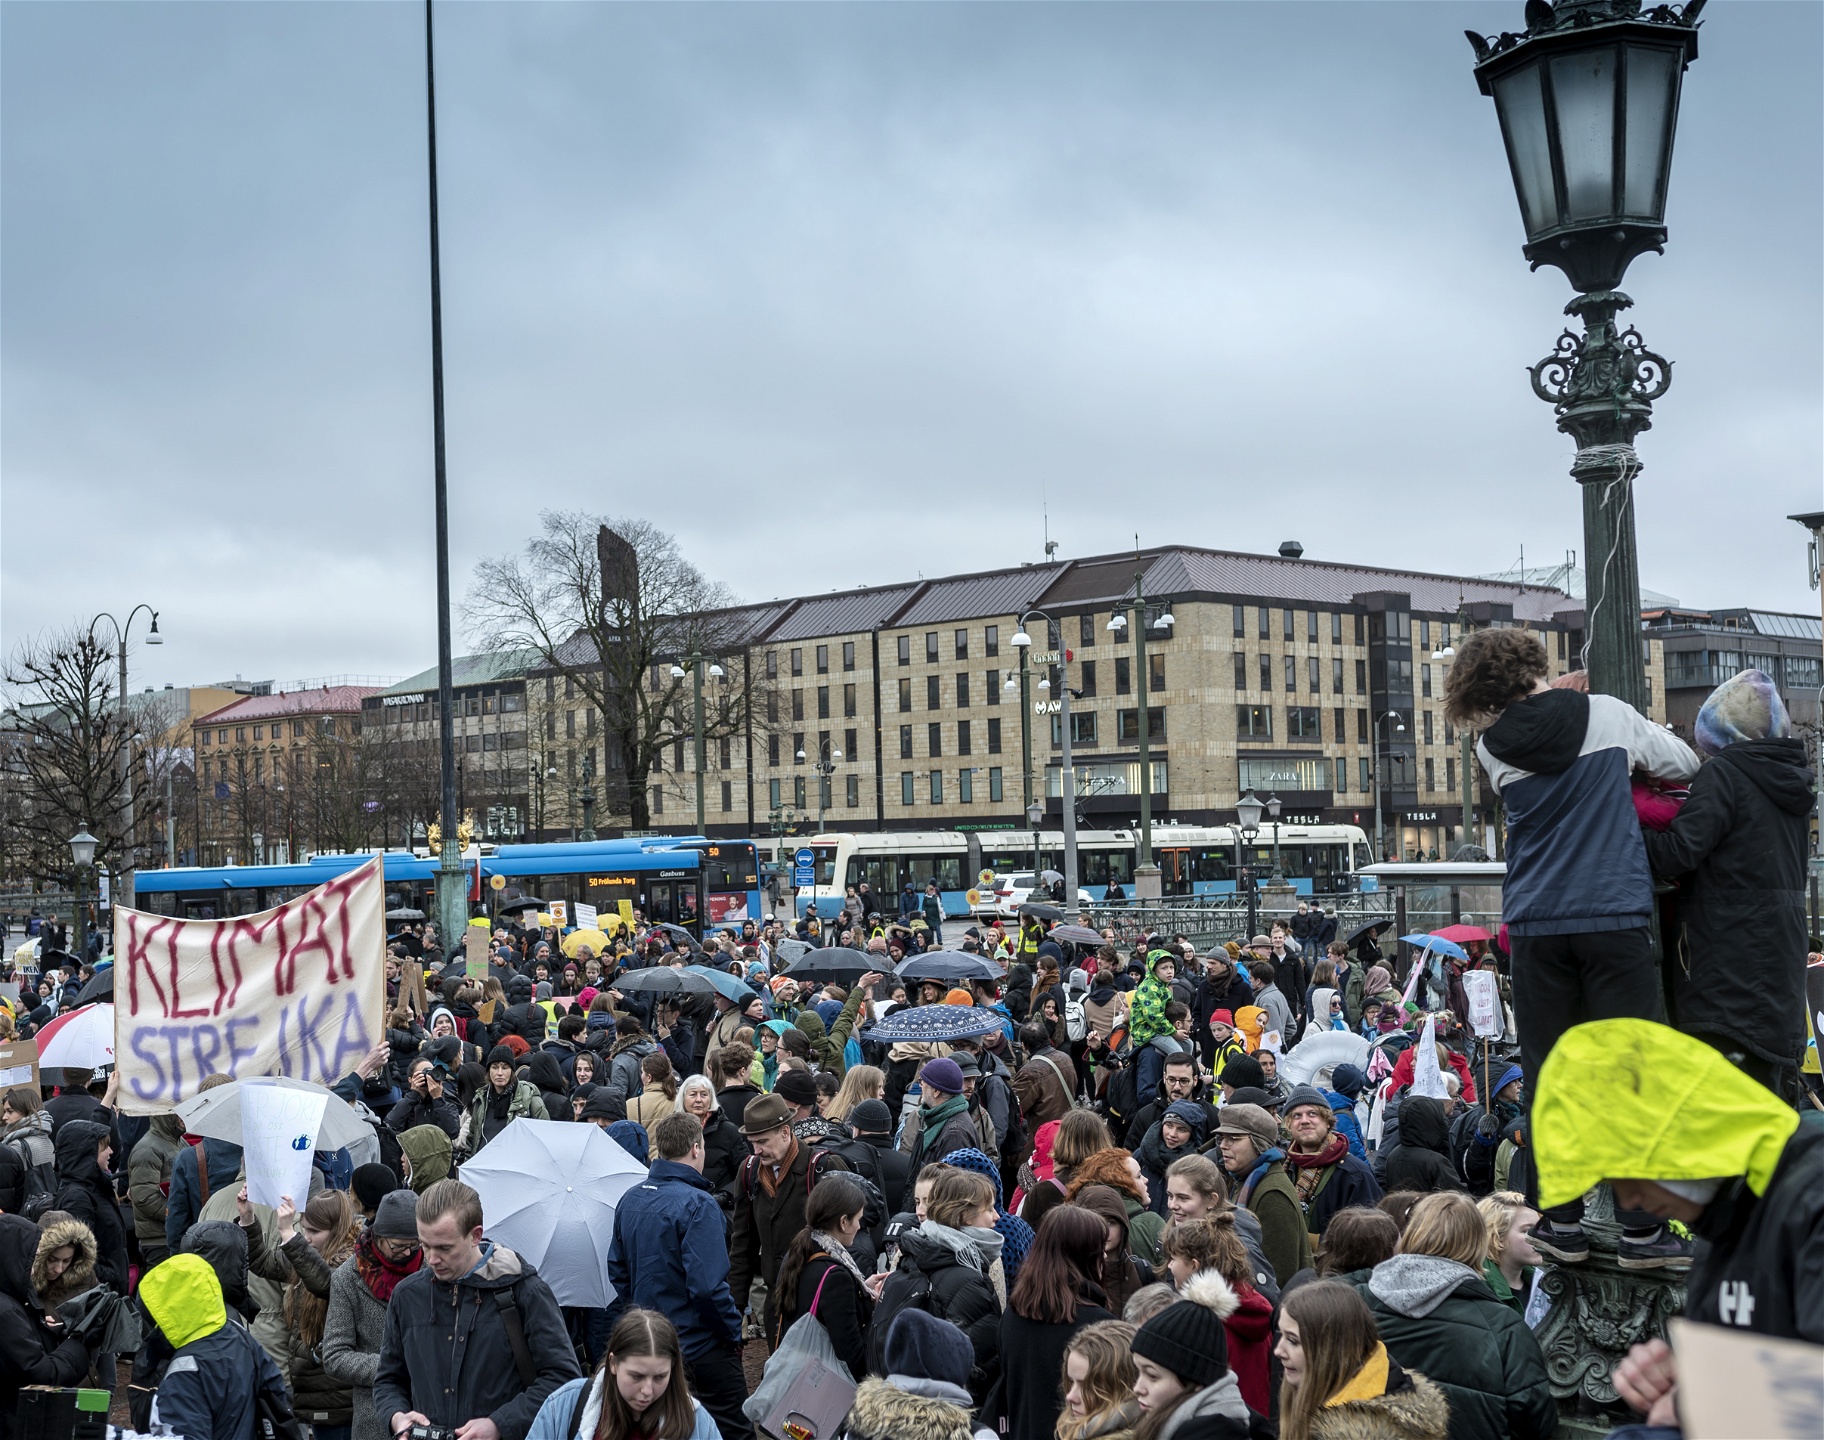 Skolstrejk för klimatet på Gustav Adolfs torg i Göteborg. 